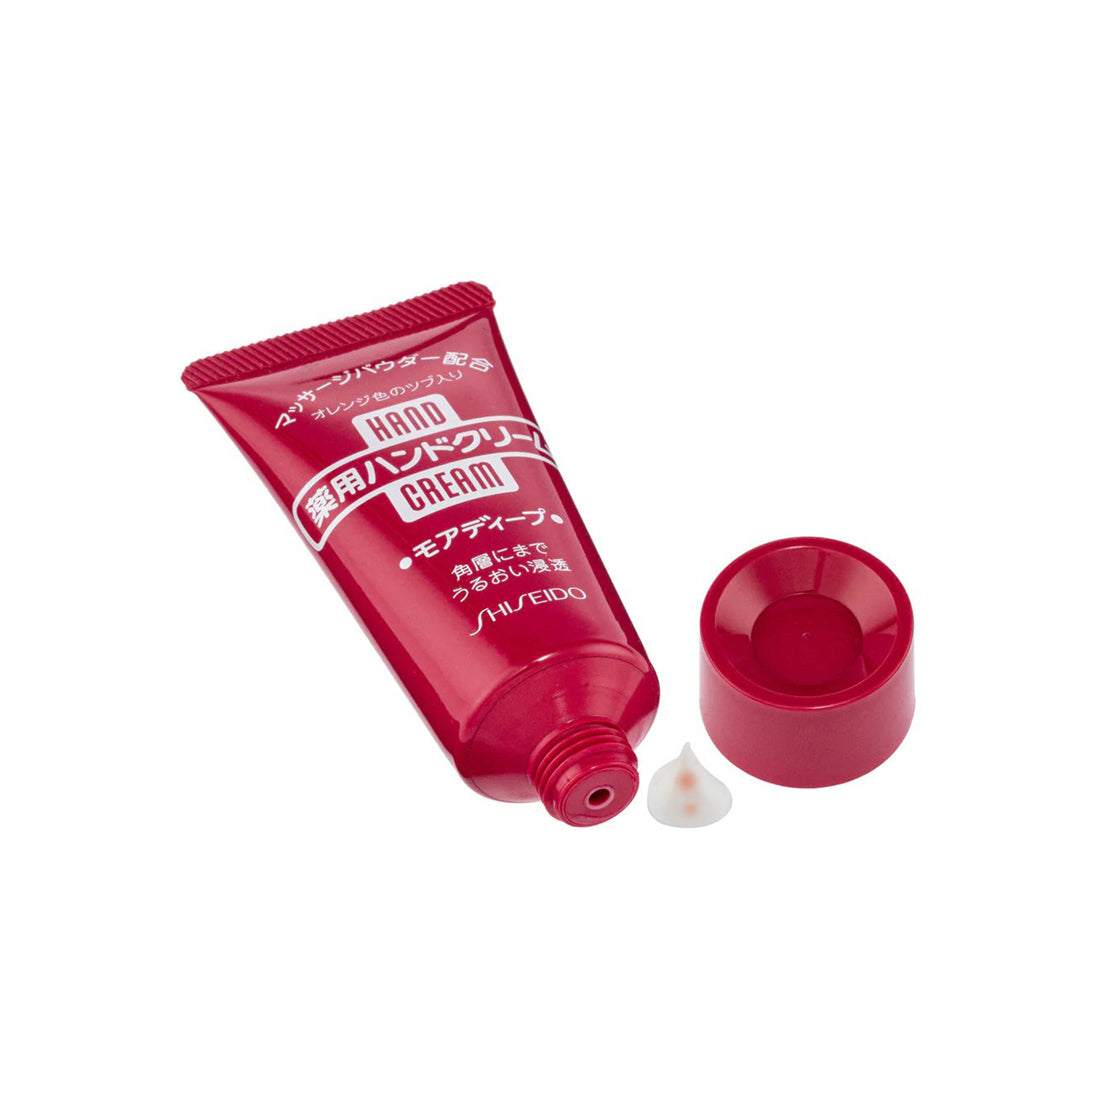 SHISEIDO Medicated moisture Hand Cream 30g